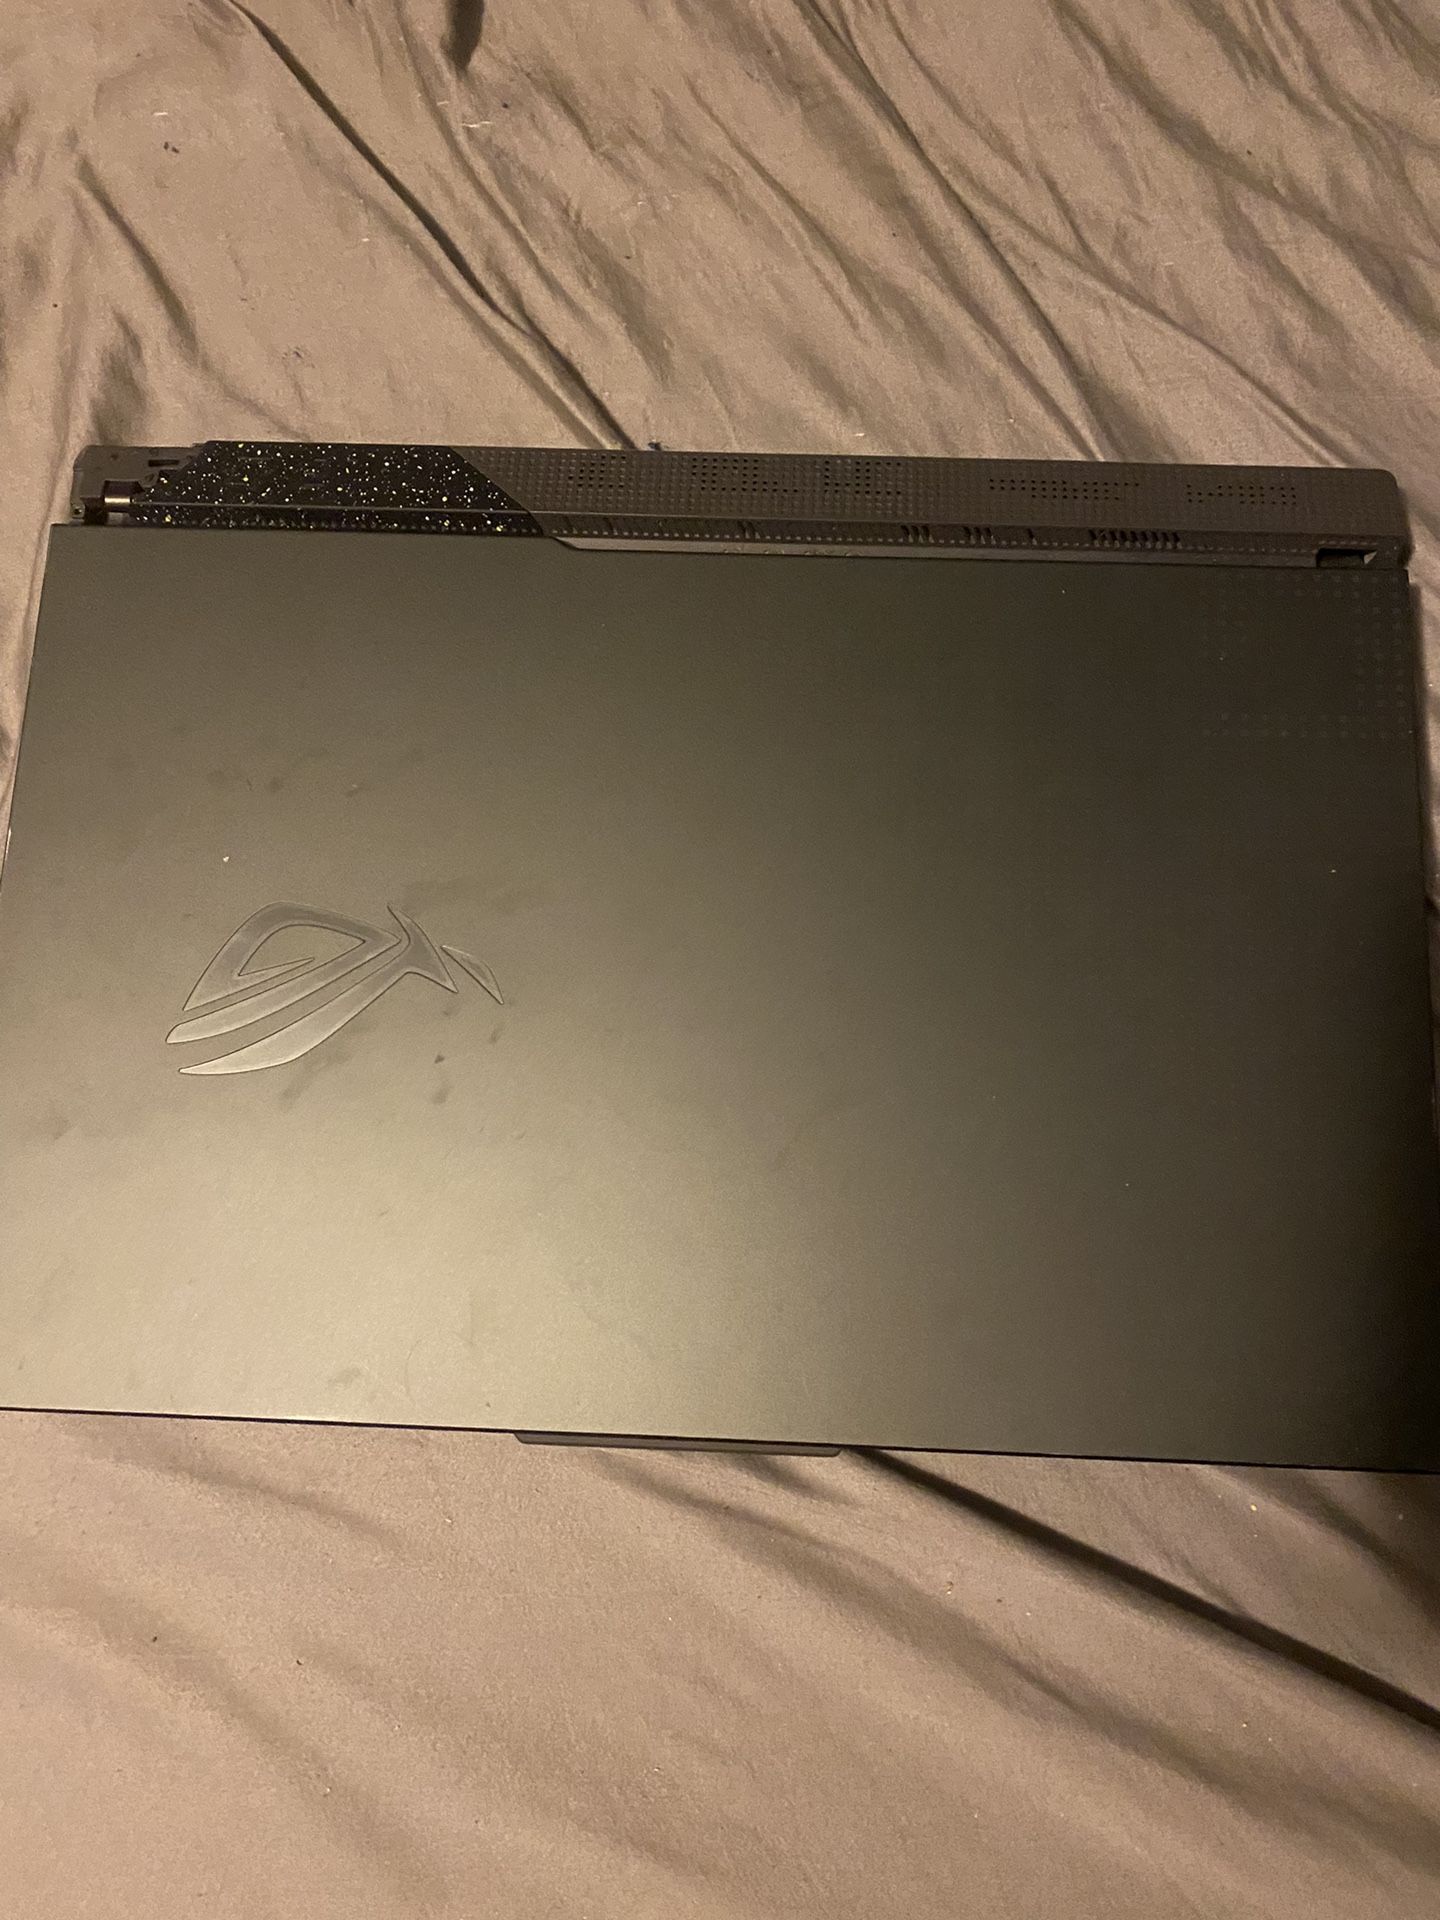 G17 Asus Laptop 2023